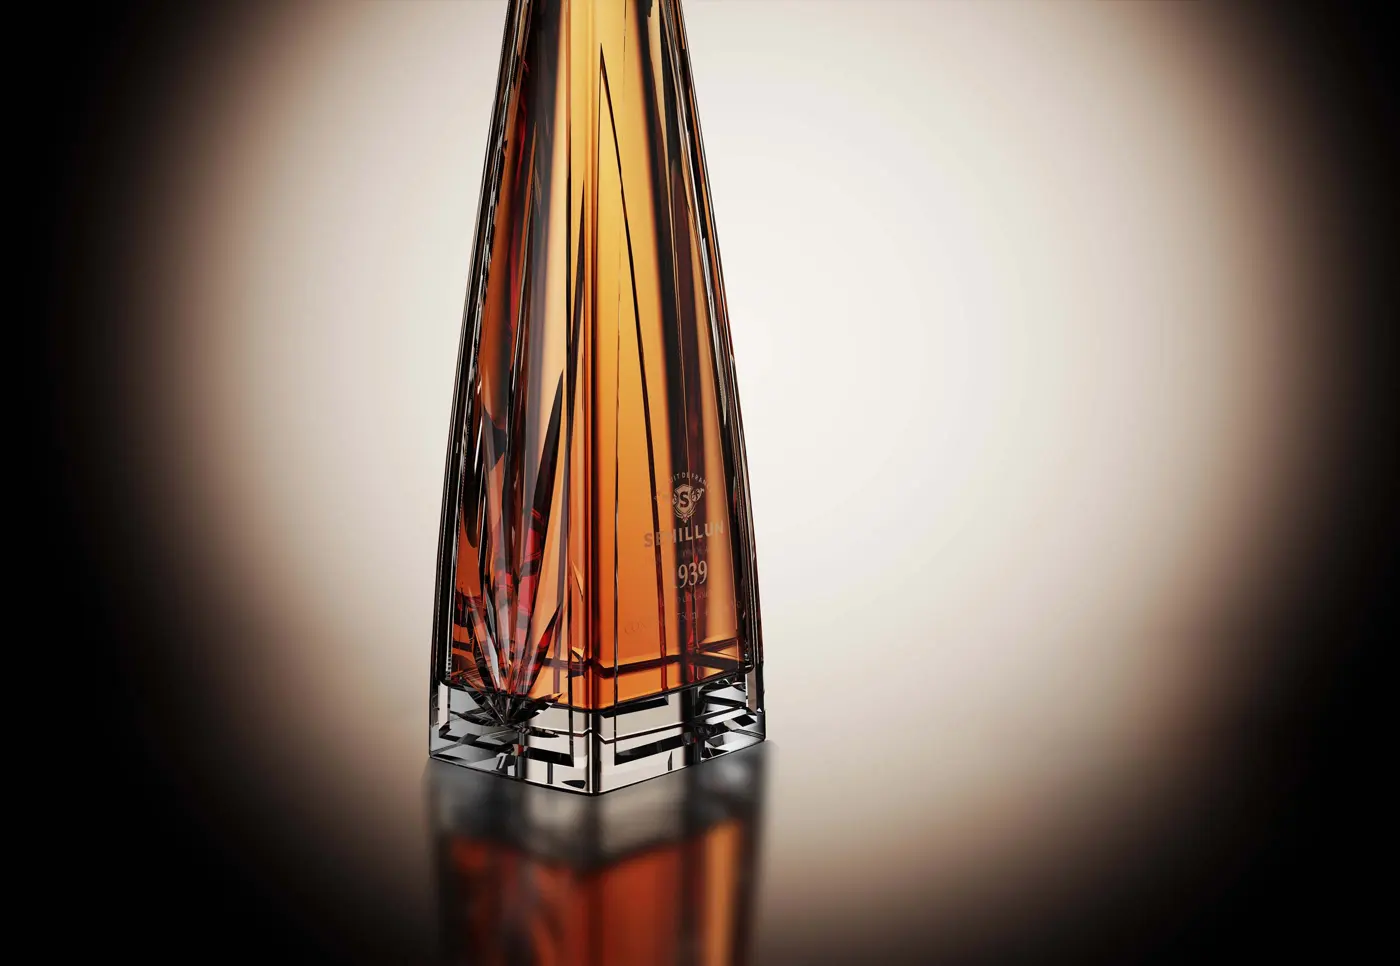 Oem özel logo yüksek kalite tequila spirits şişe ışık şişesi özel kutu ile geliyor